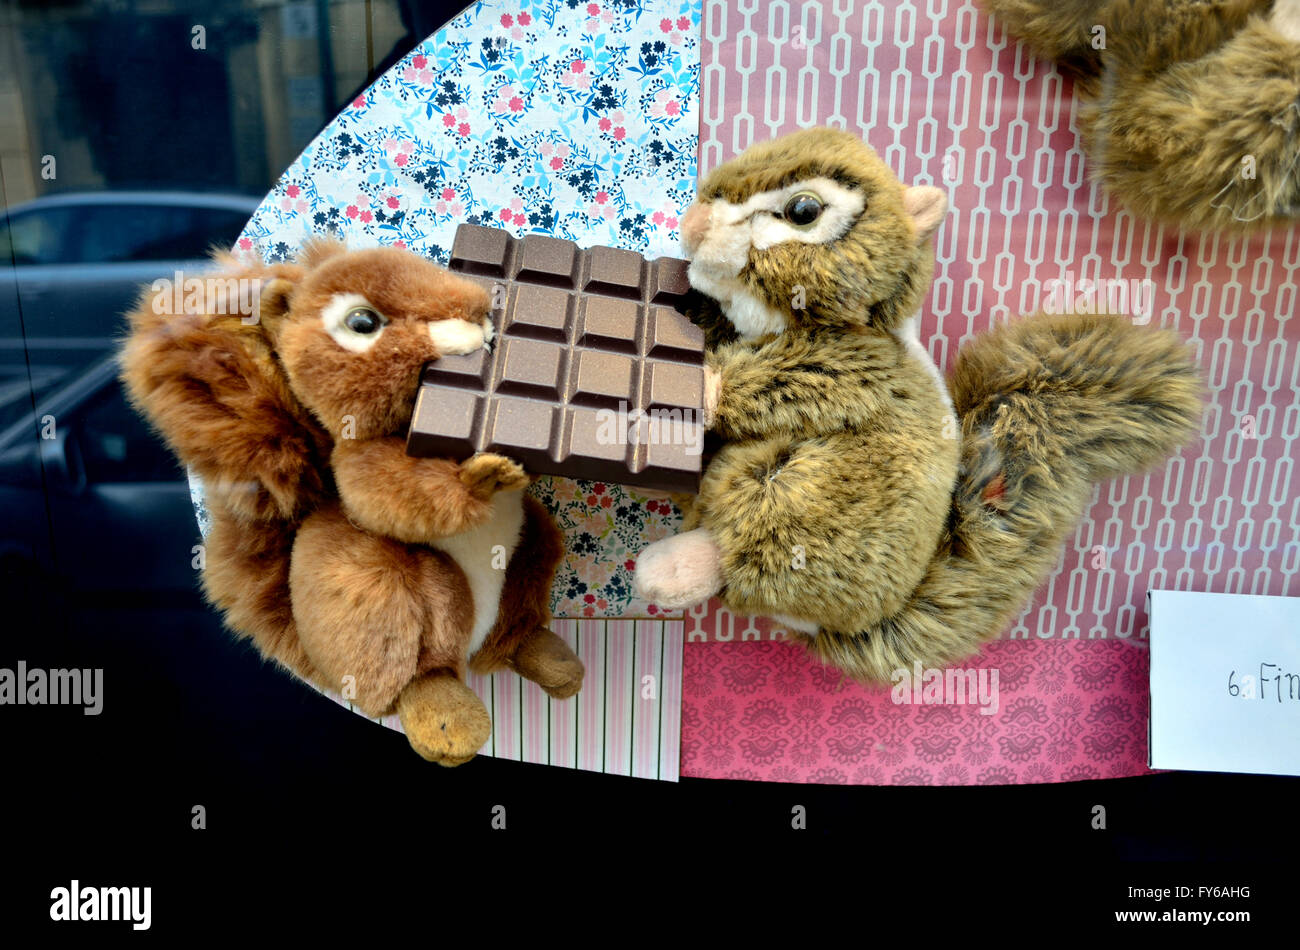 Praga, Repubblica Ceca. Negozio finestra display - scoiattoli mangiare barrette di cioccolato Foto Stock